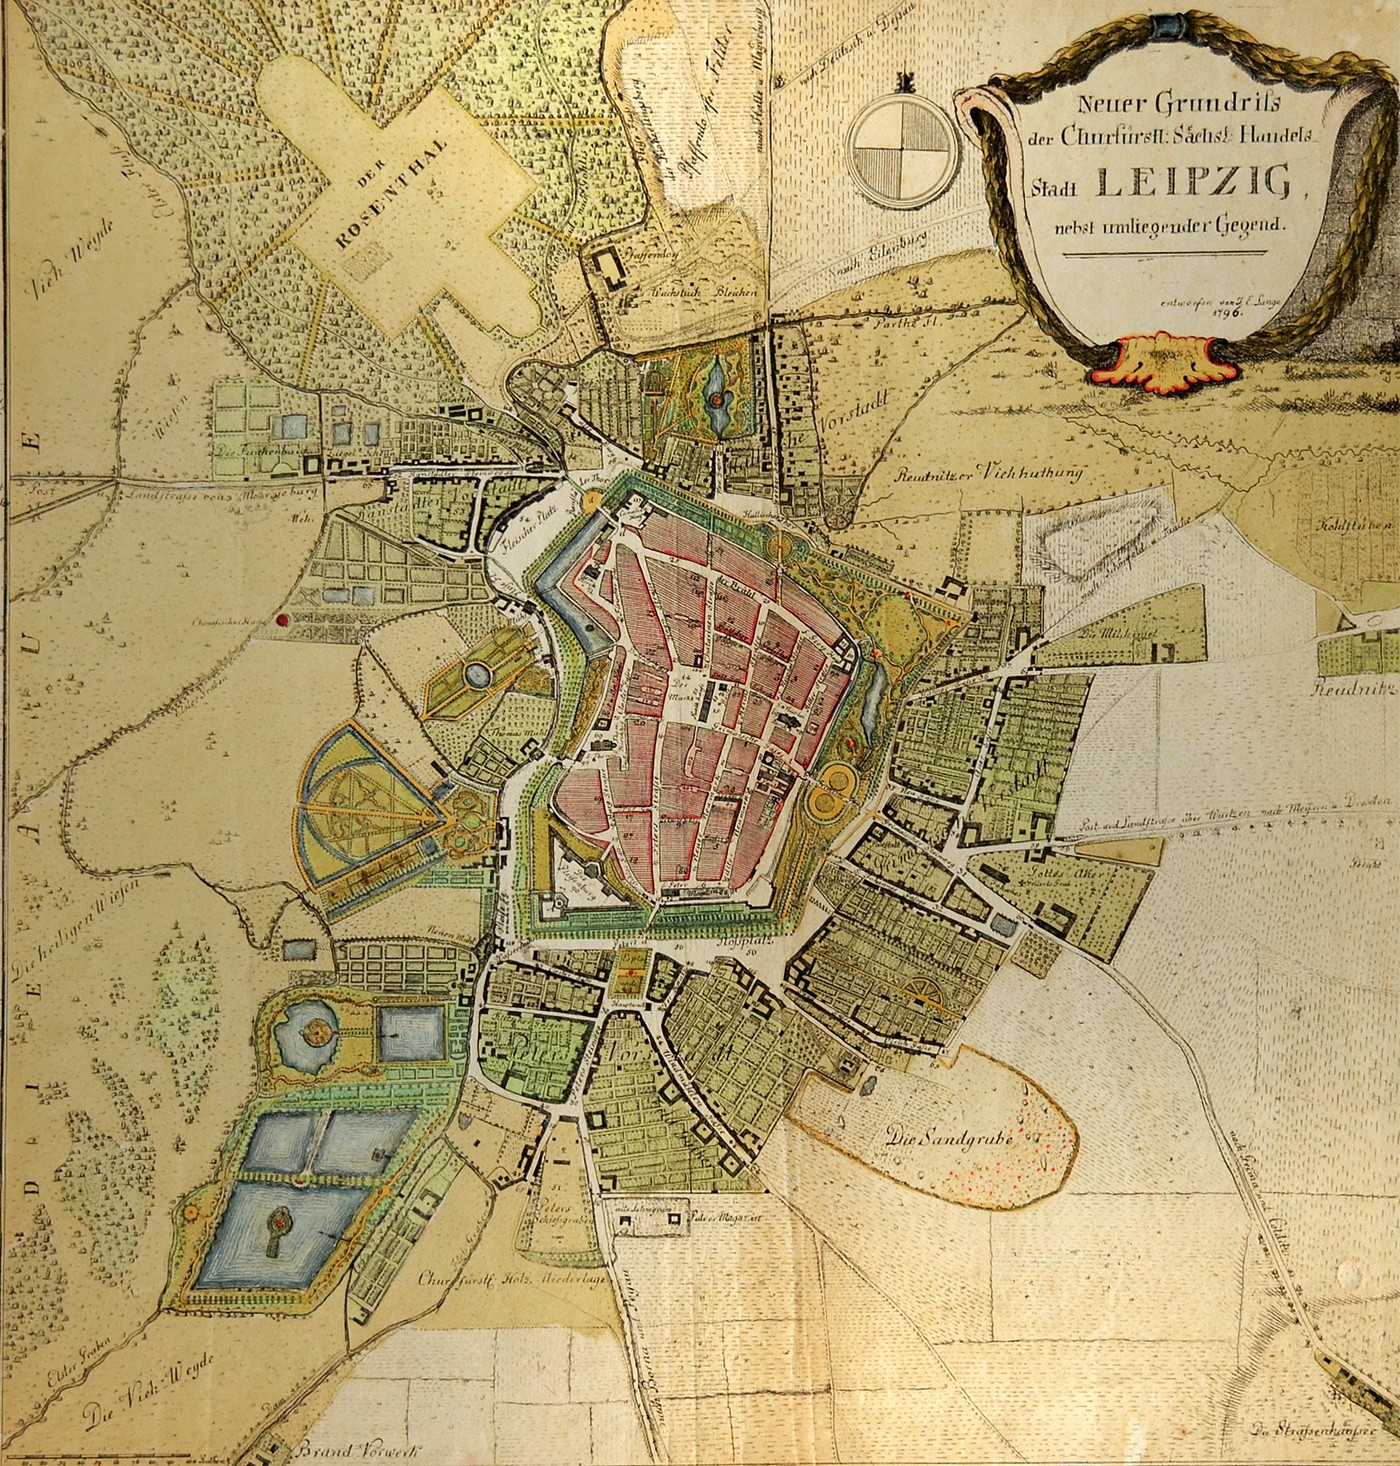 Grundriss von Leipzig aus dem Jahre 1796, J.E. Lange. Die Gartenanlagen sind hier deutlich erkennbar.